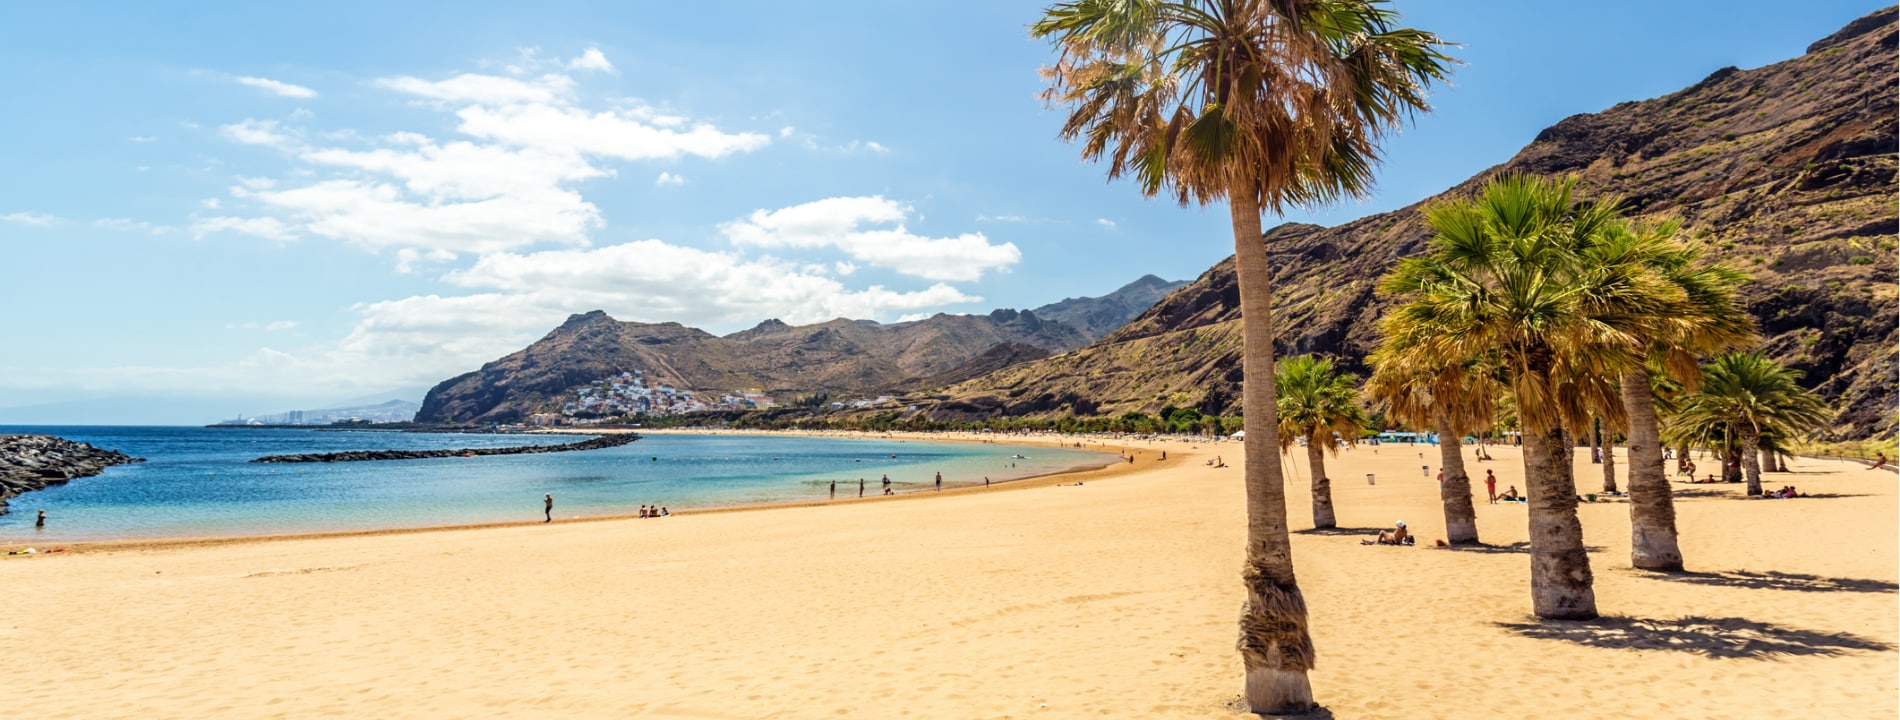 Playa De Las Teresitas-Tenerife | Eden Viaggi